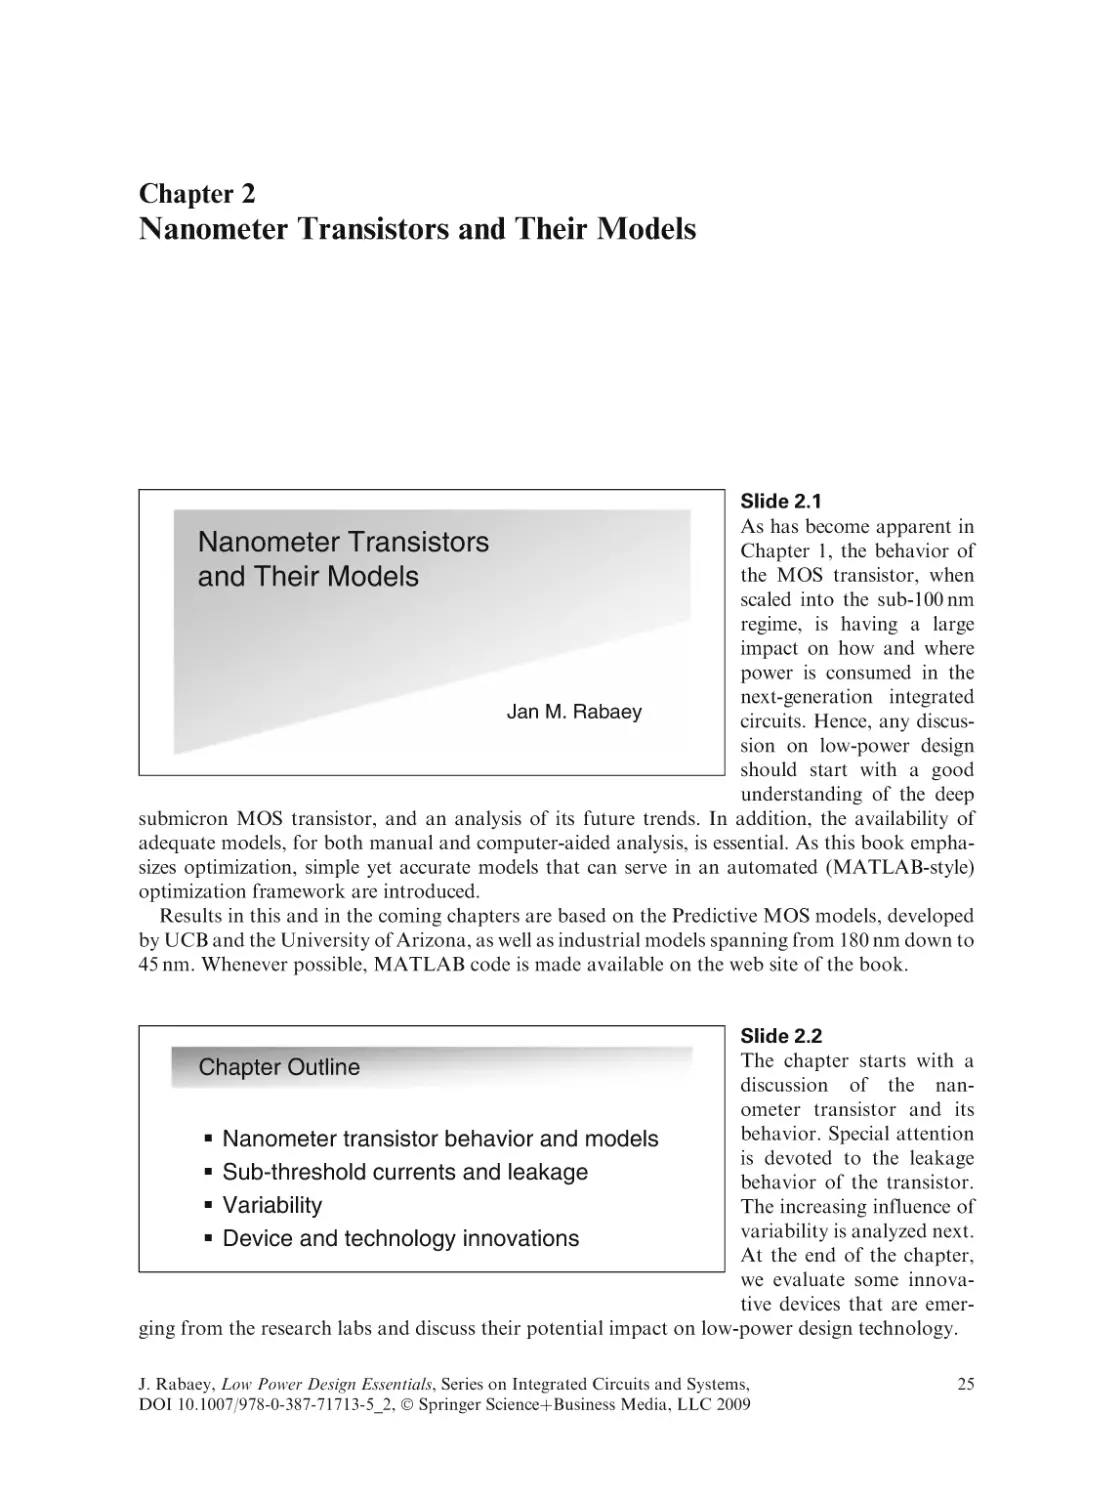 Nanometer Transistors and Their Models
2.1 Slide 2.1
2.2 Slide 2.2